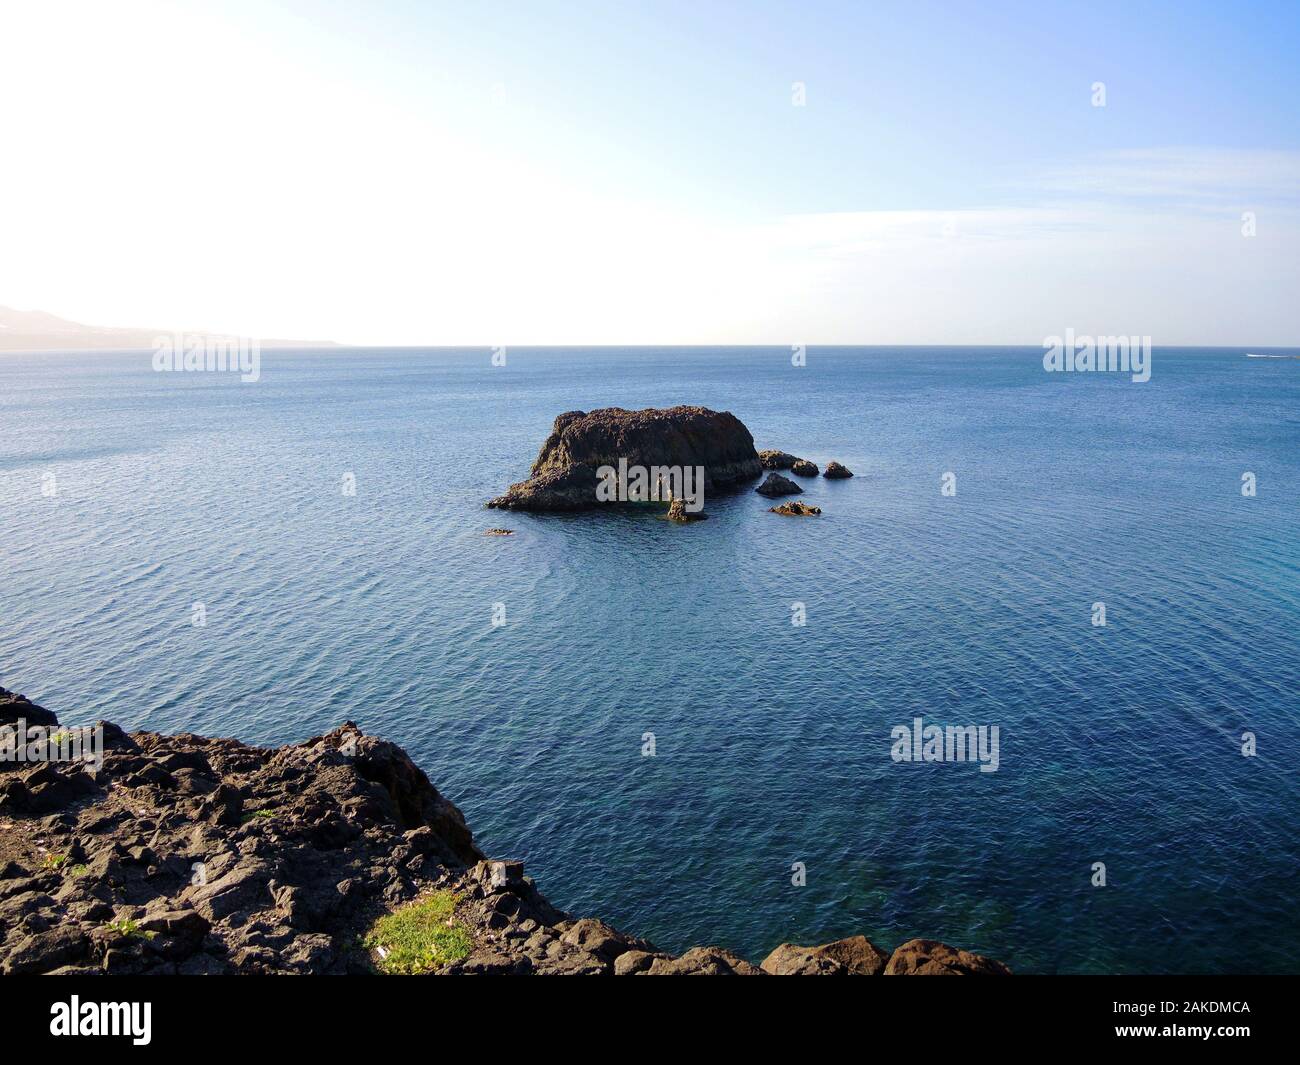 A rocky island on calm blue ocean surface. Stock Photo